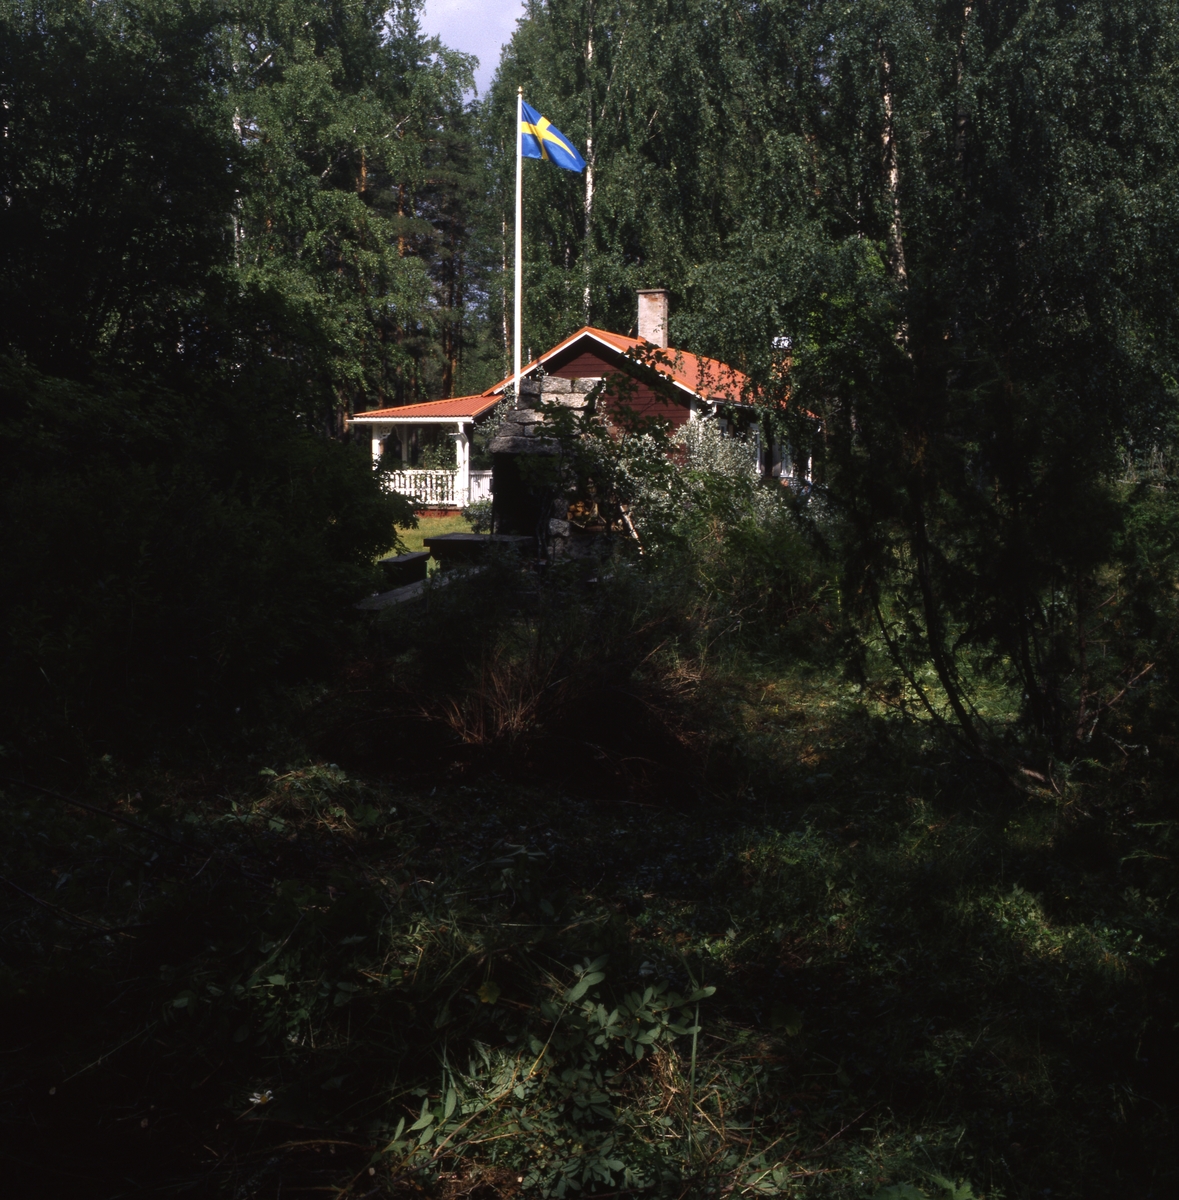 Författaren Albert Vikstens torp vid Ängratörn 1999. Huset och den murade utegrillen ligger inbäddat i grönska och flaggan är hissad.